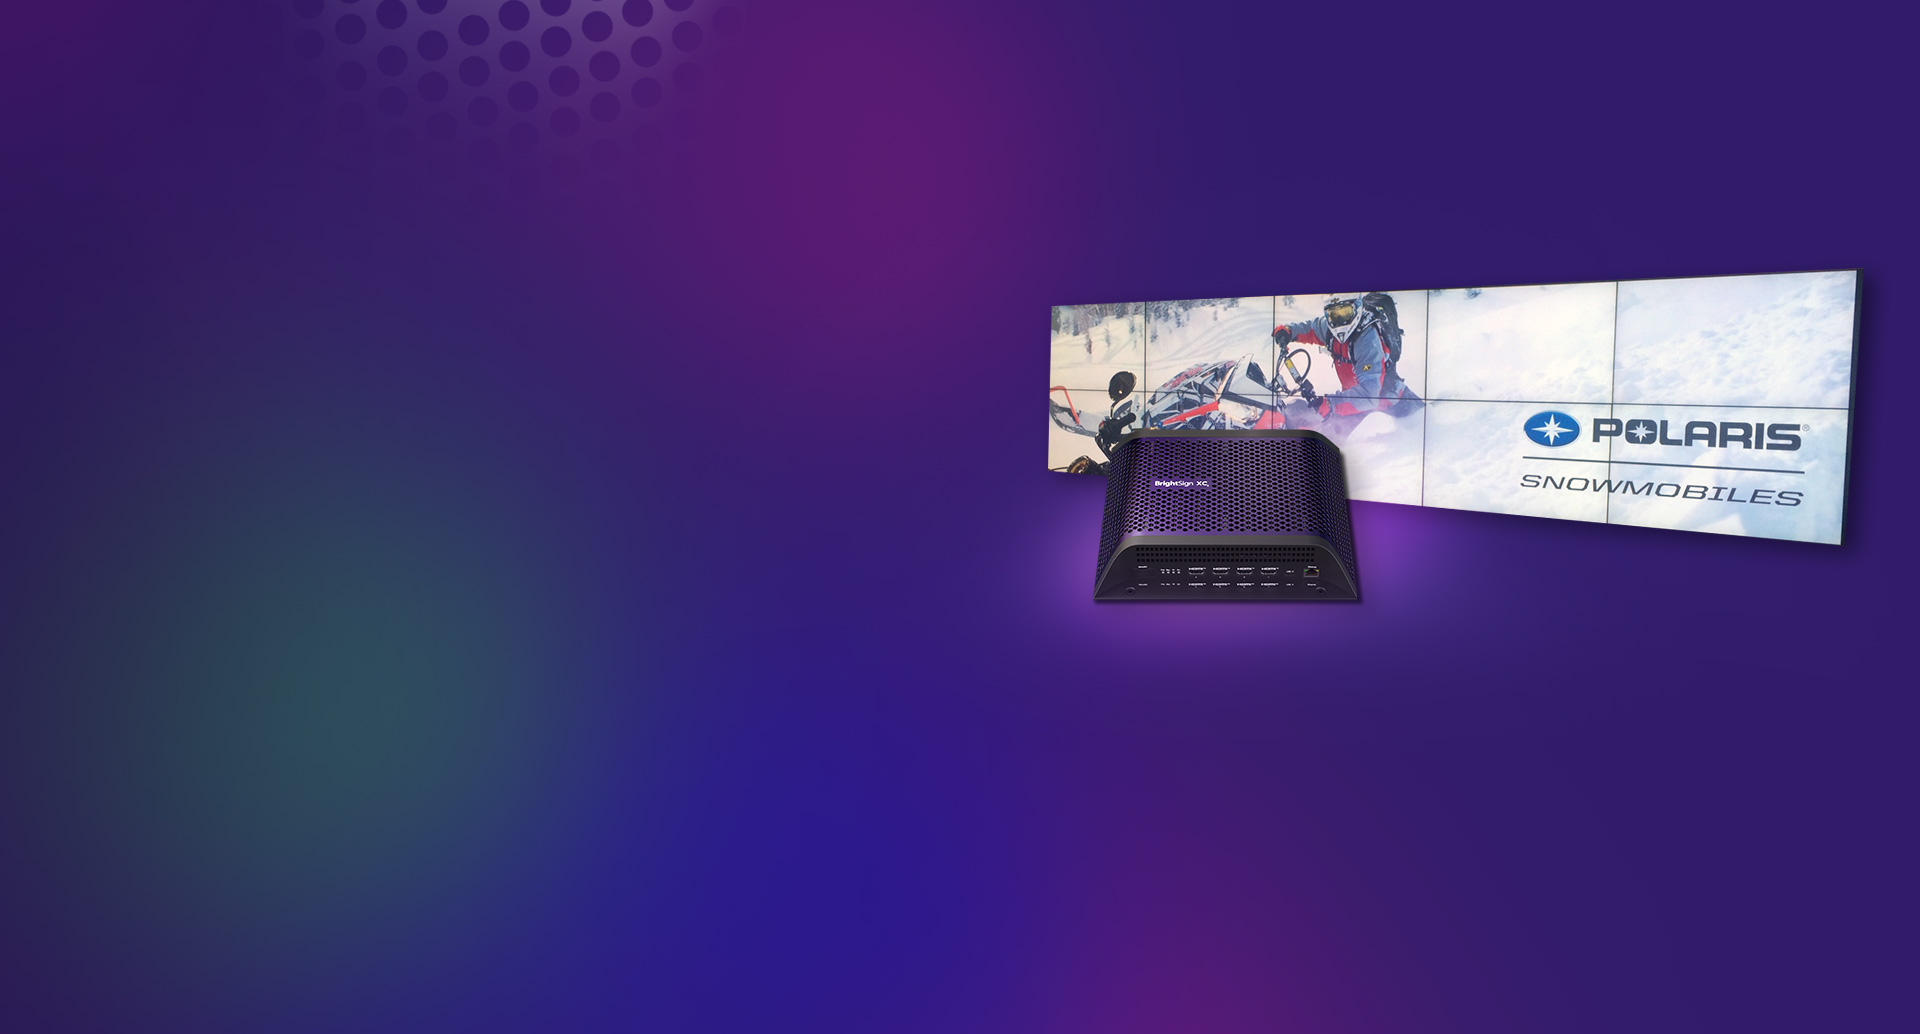 BrightSign XC5 Digital Signage Player mit Polaris-Schneemobilen, die auf zwei Reihen von fünf Bildschirmen angezeigt werden